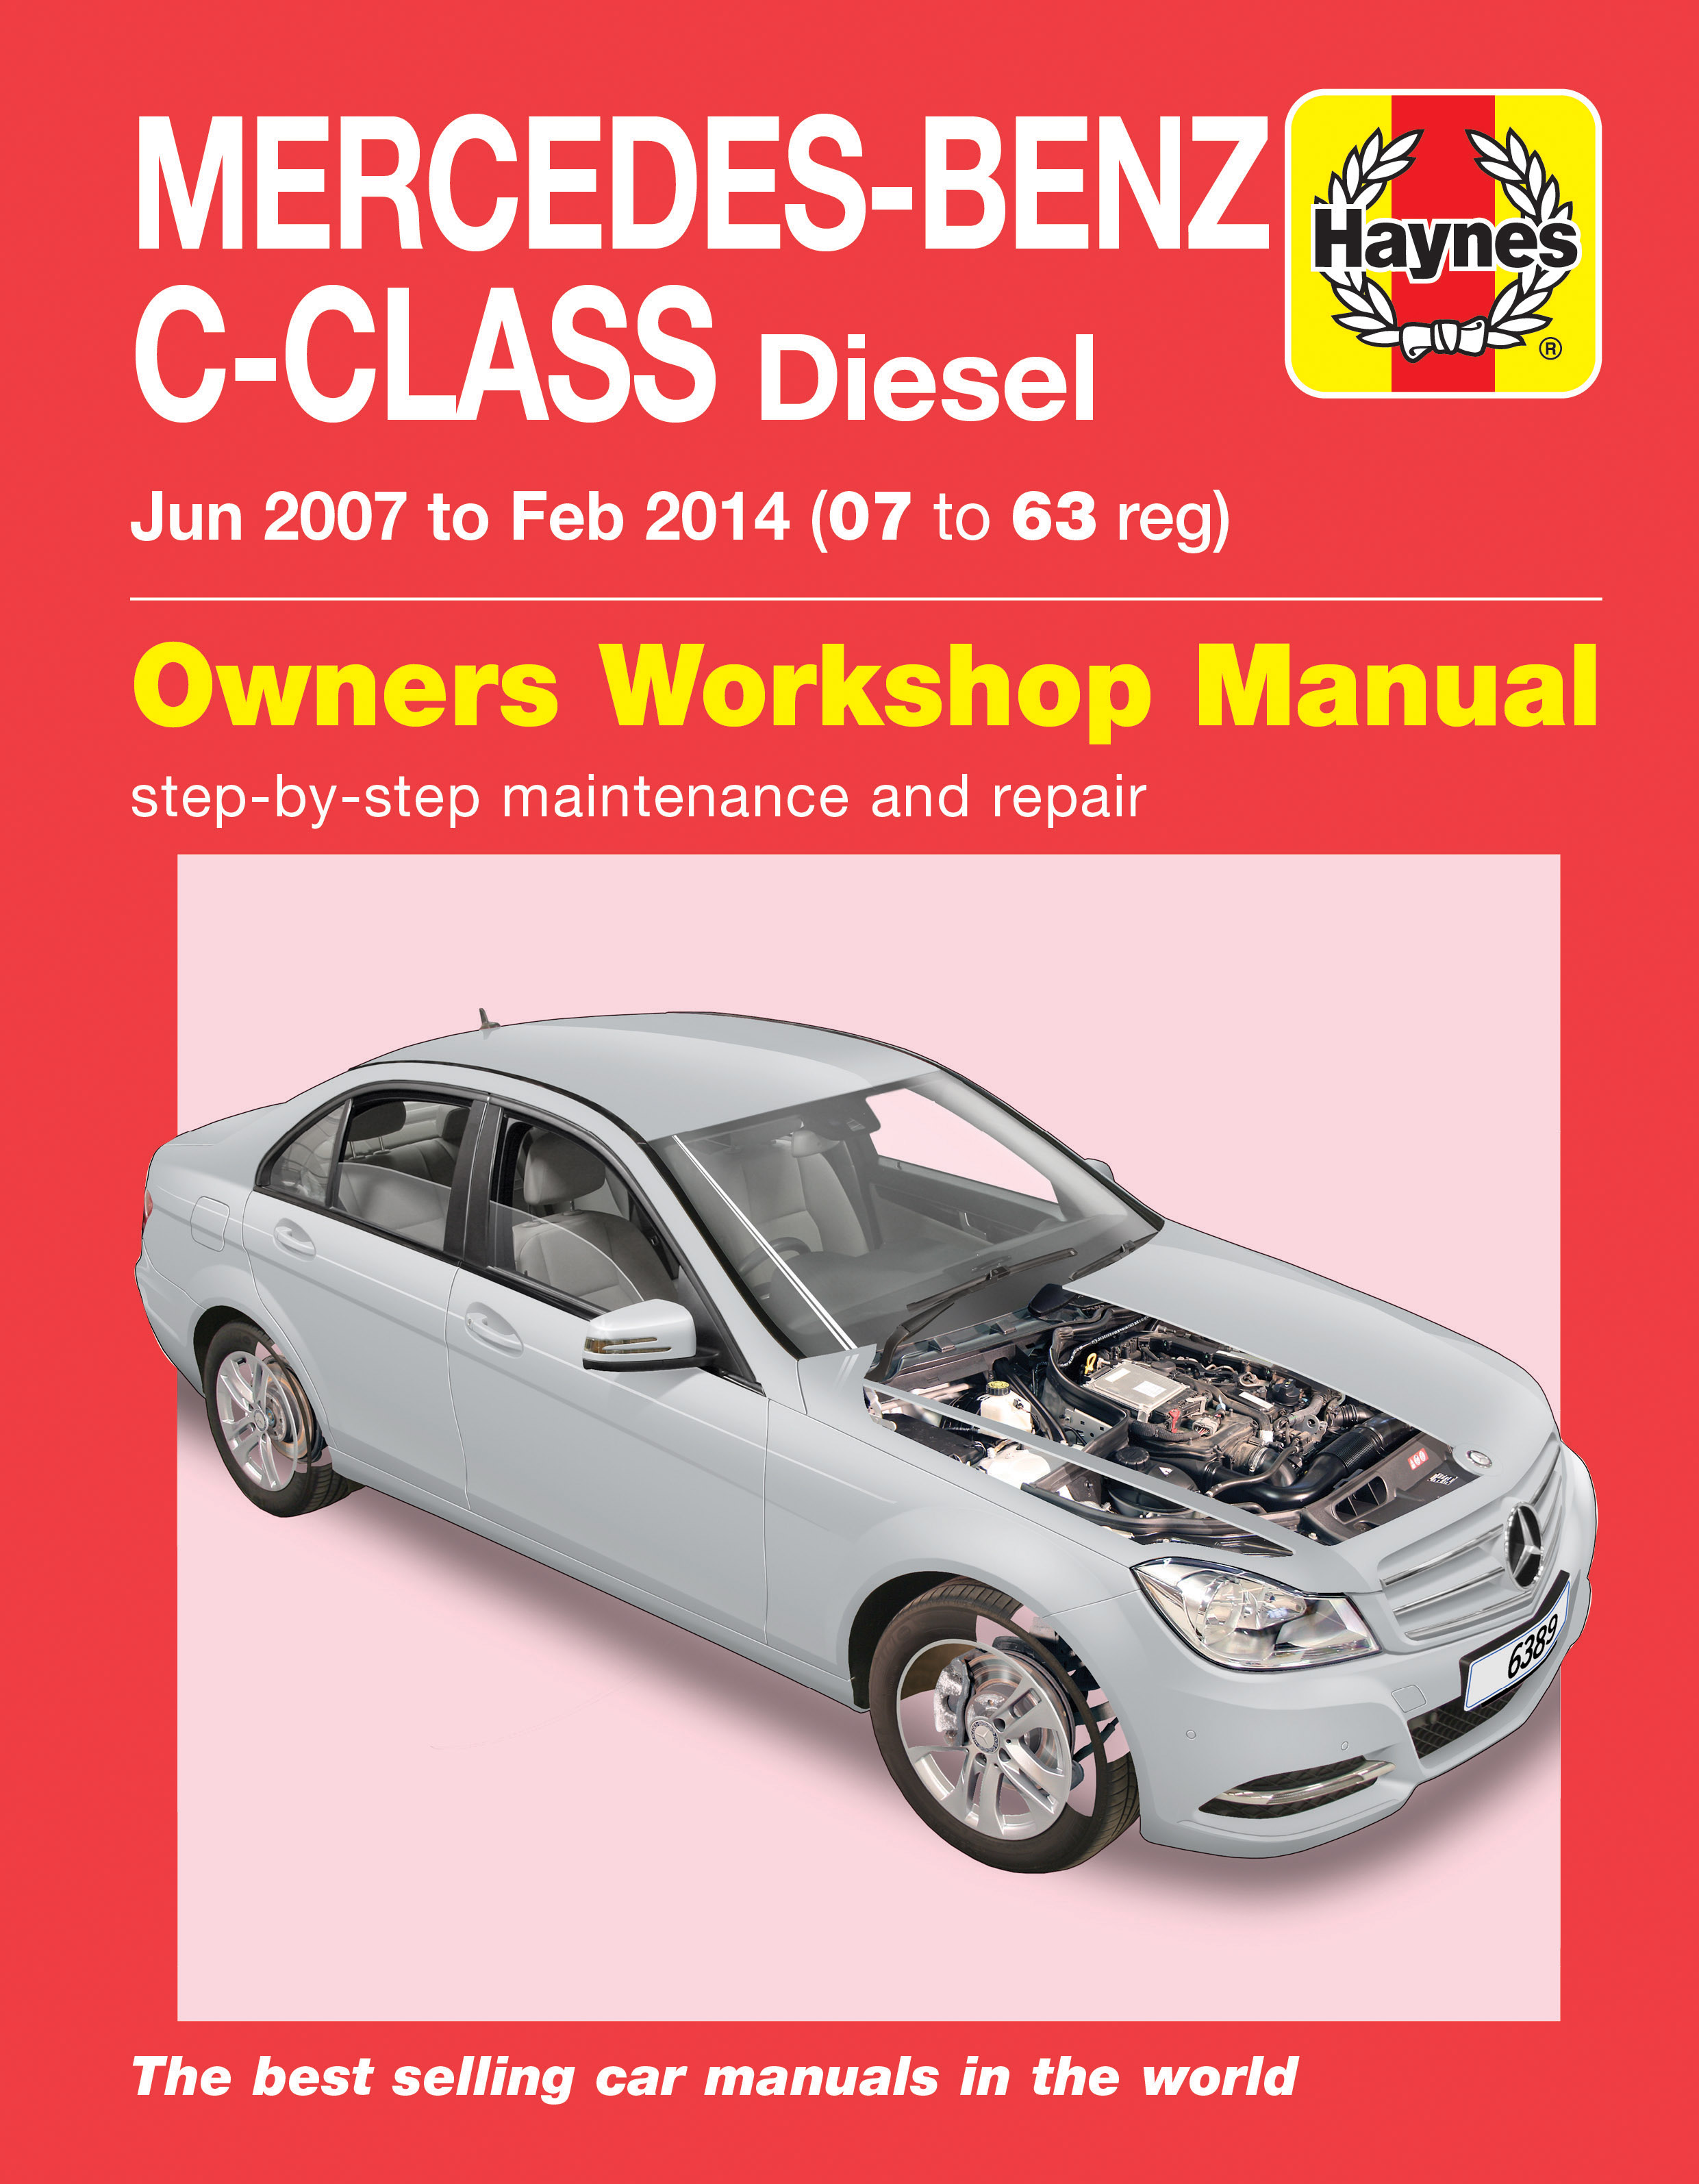 Haynes Repair Manual Diesel Certifiedeasysite